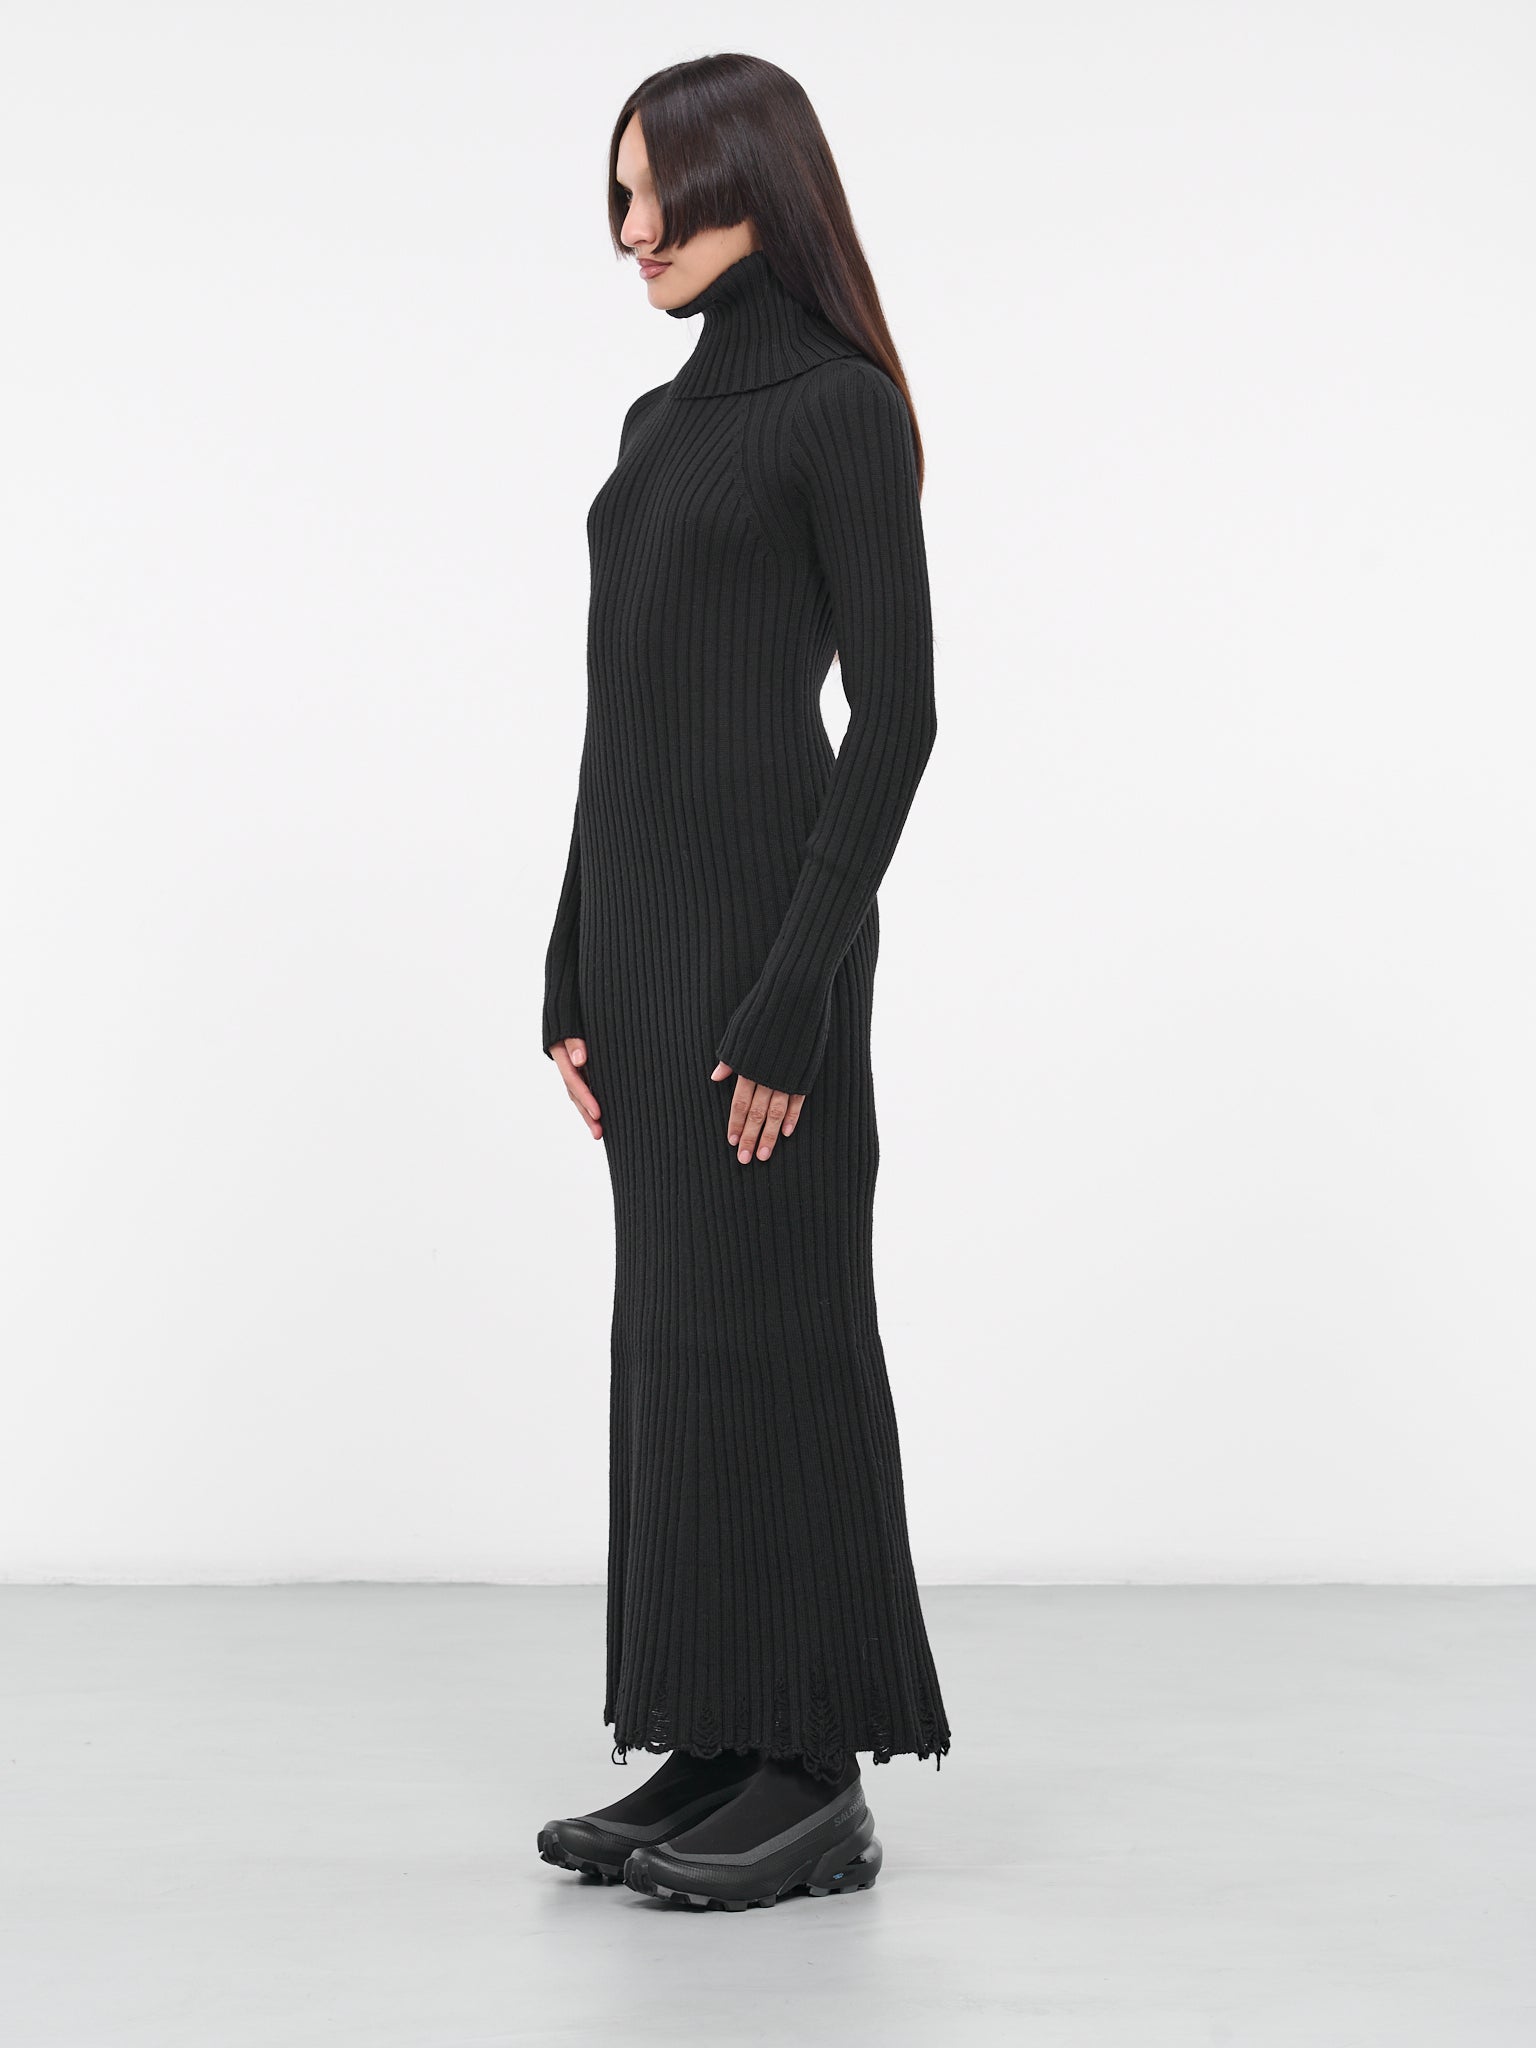 Distressed Rib Knit Dress (JL-N020-051-BLACK)